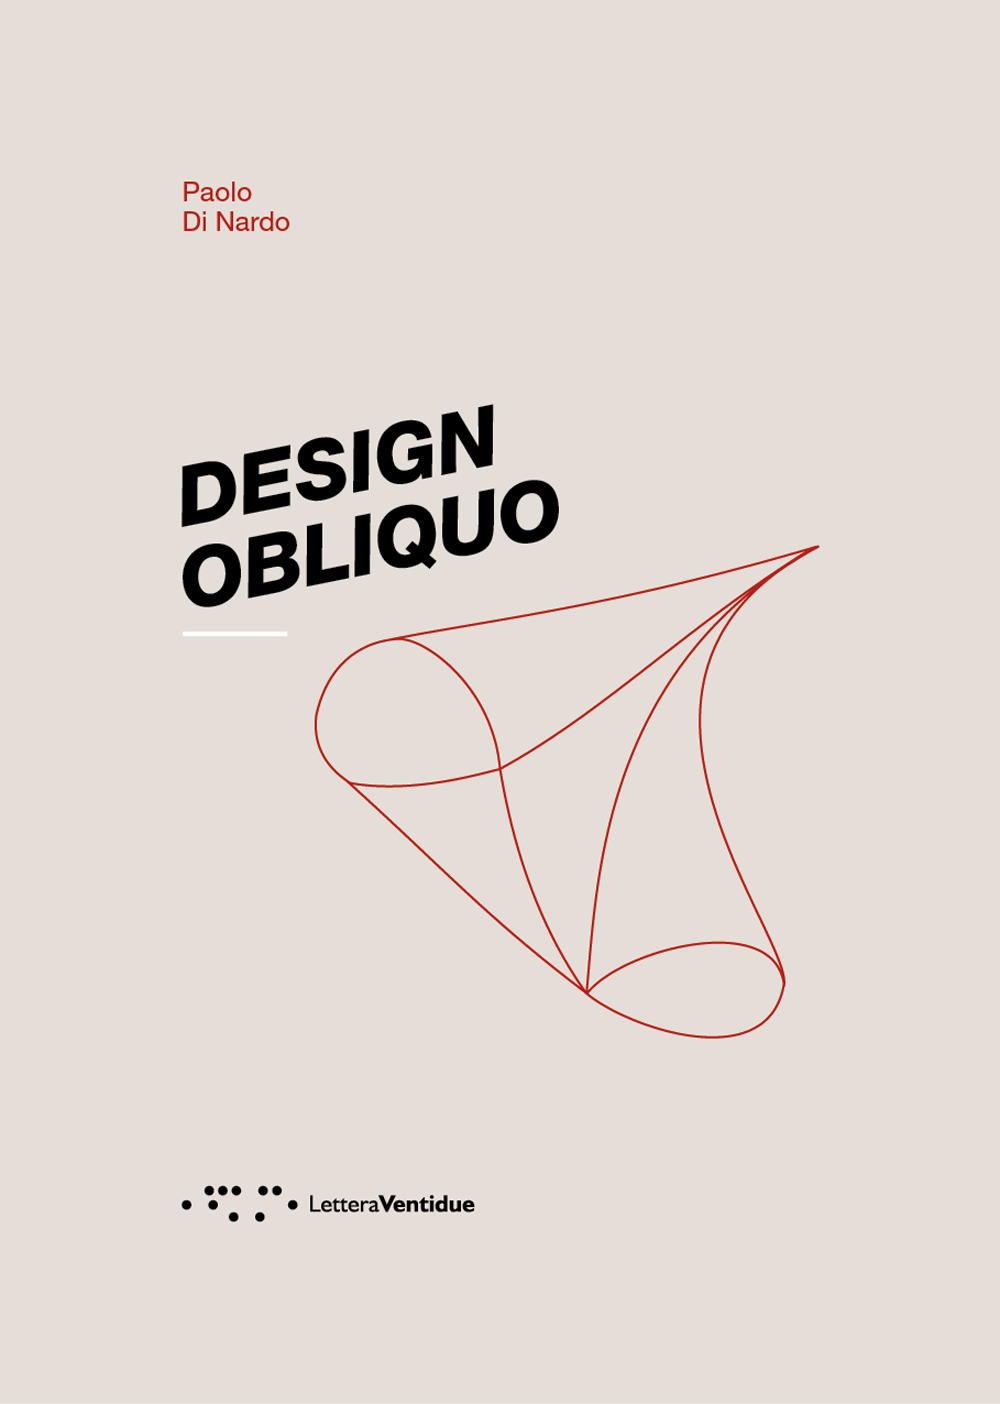 Design obliquo